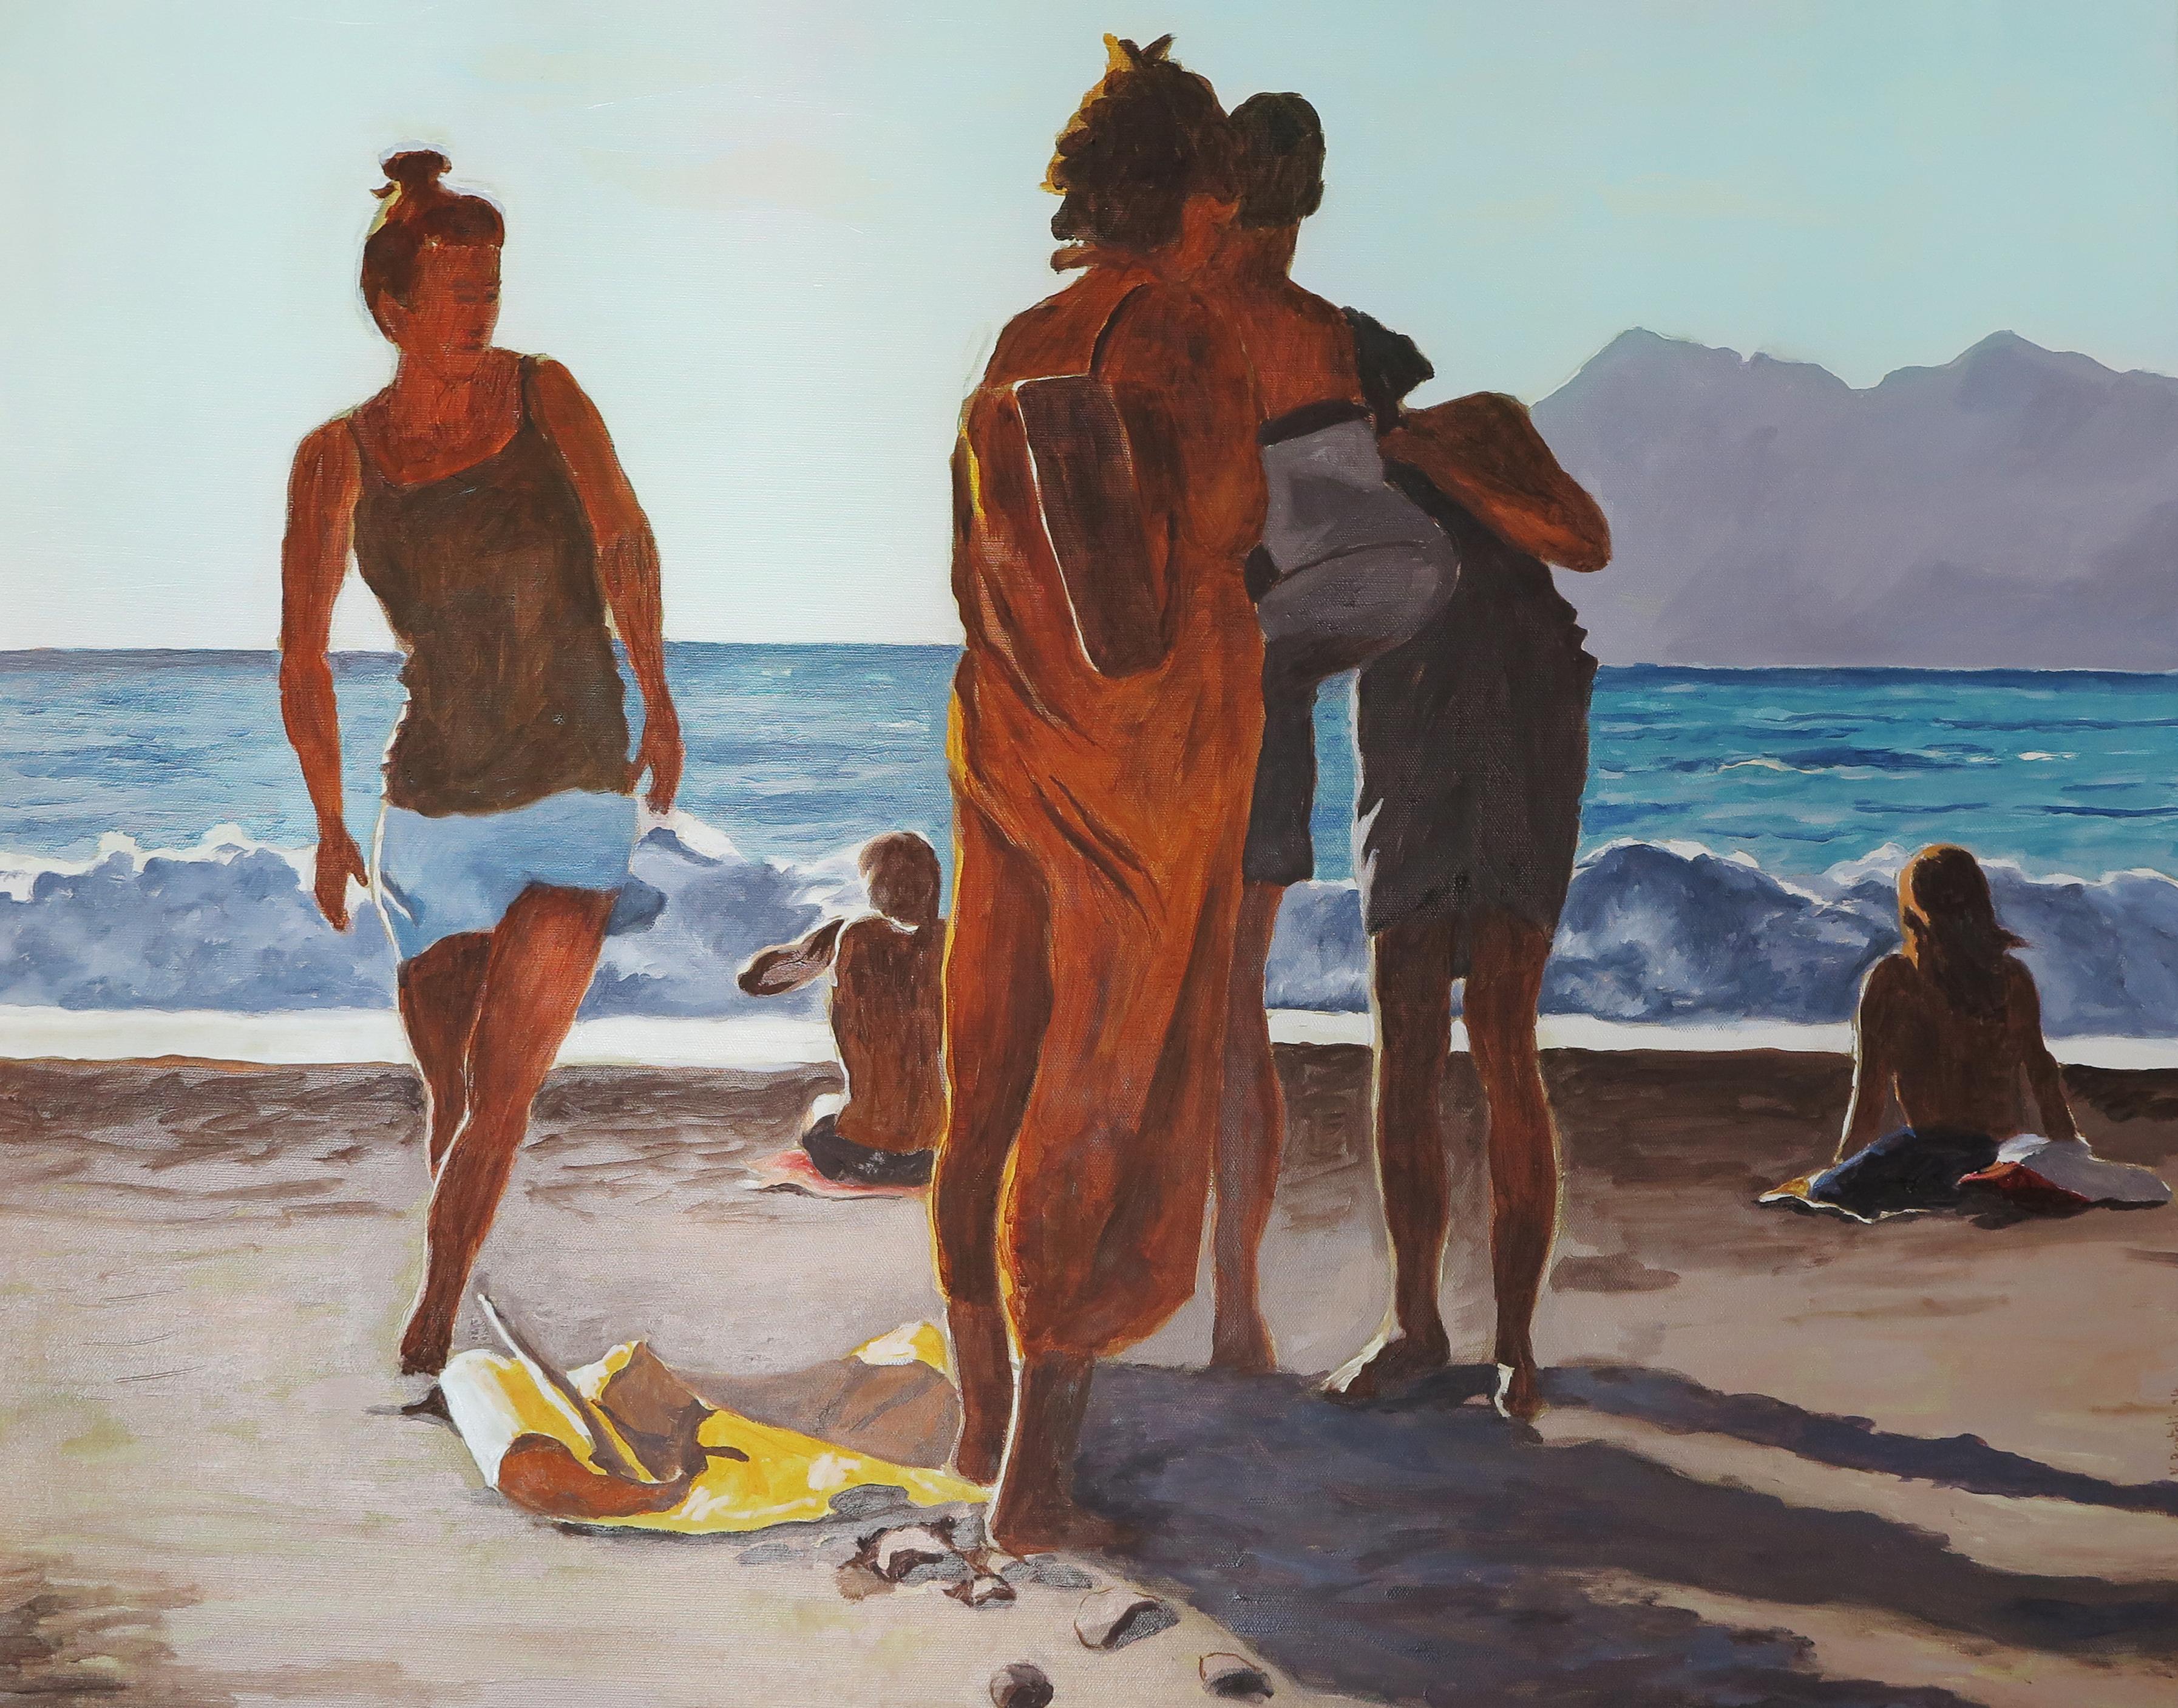 Huile sur toile

Karine Bartoli est née en 1971 à Ajaccio. Elle a intégré l'École nationale supérieure des beaux-arts de Marseille, dont elle est sortie diplômée en 1997. Depuis lors, elle se consacre à la pratique de la peinture. Son travail est